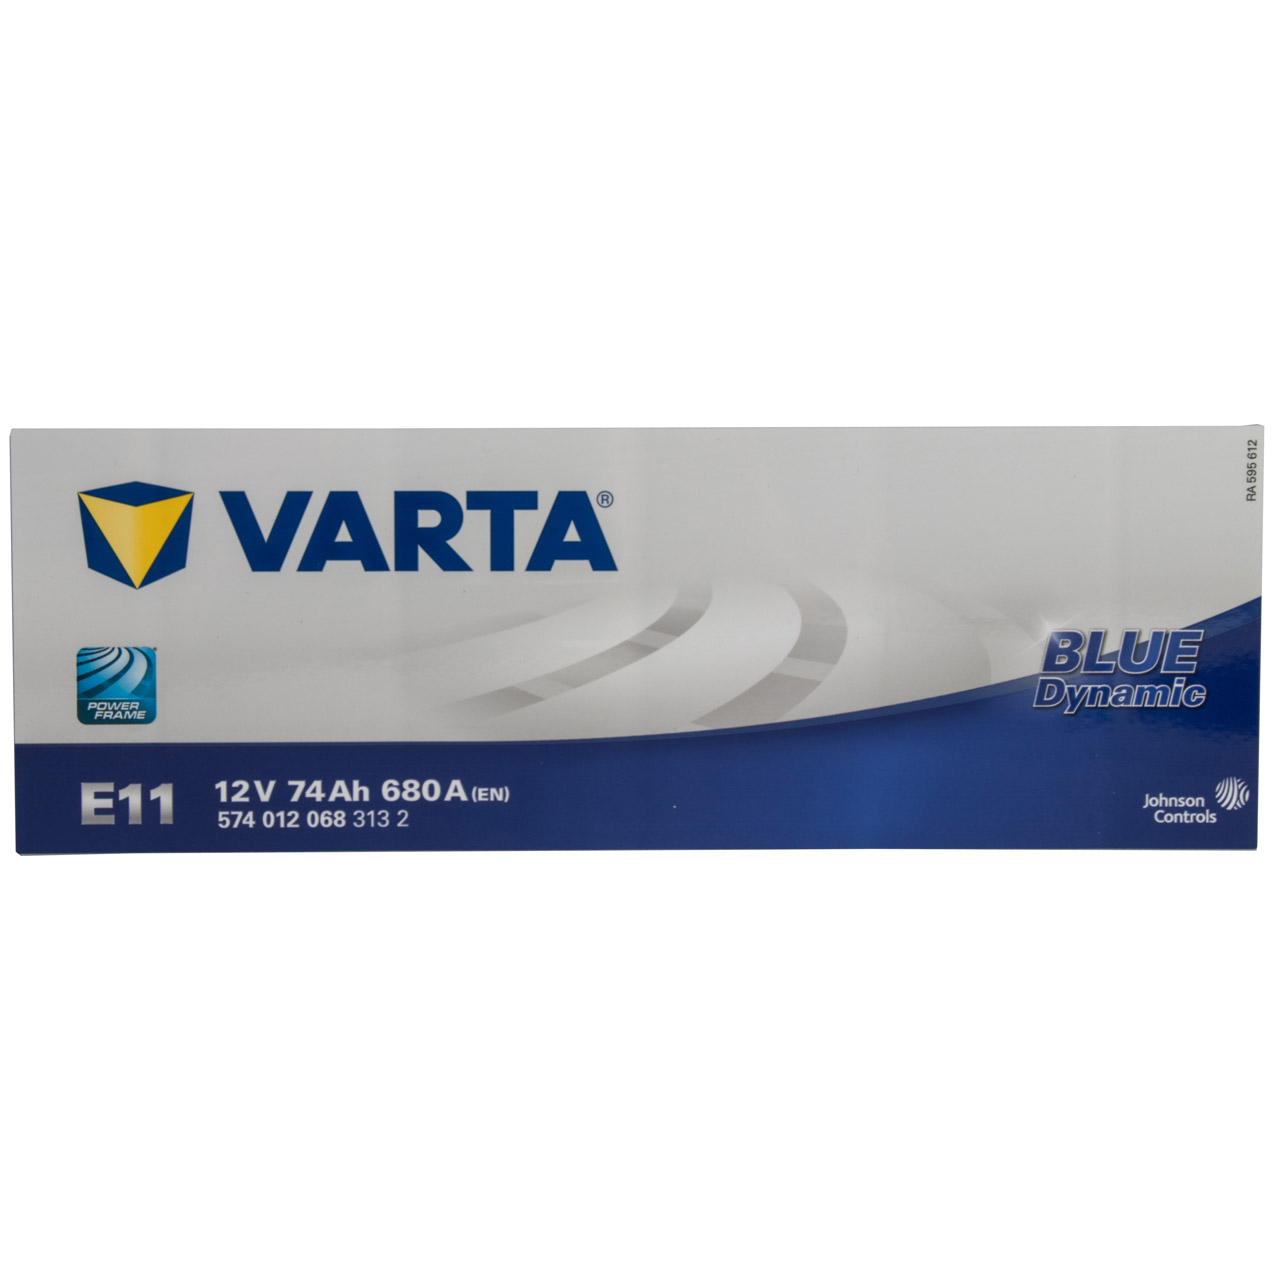 VARTA BLUE dynamic E11 Autobatterie Batterie Starterbatterie 12V 74Ah 680A